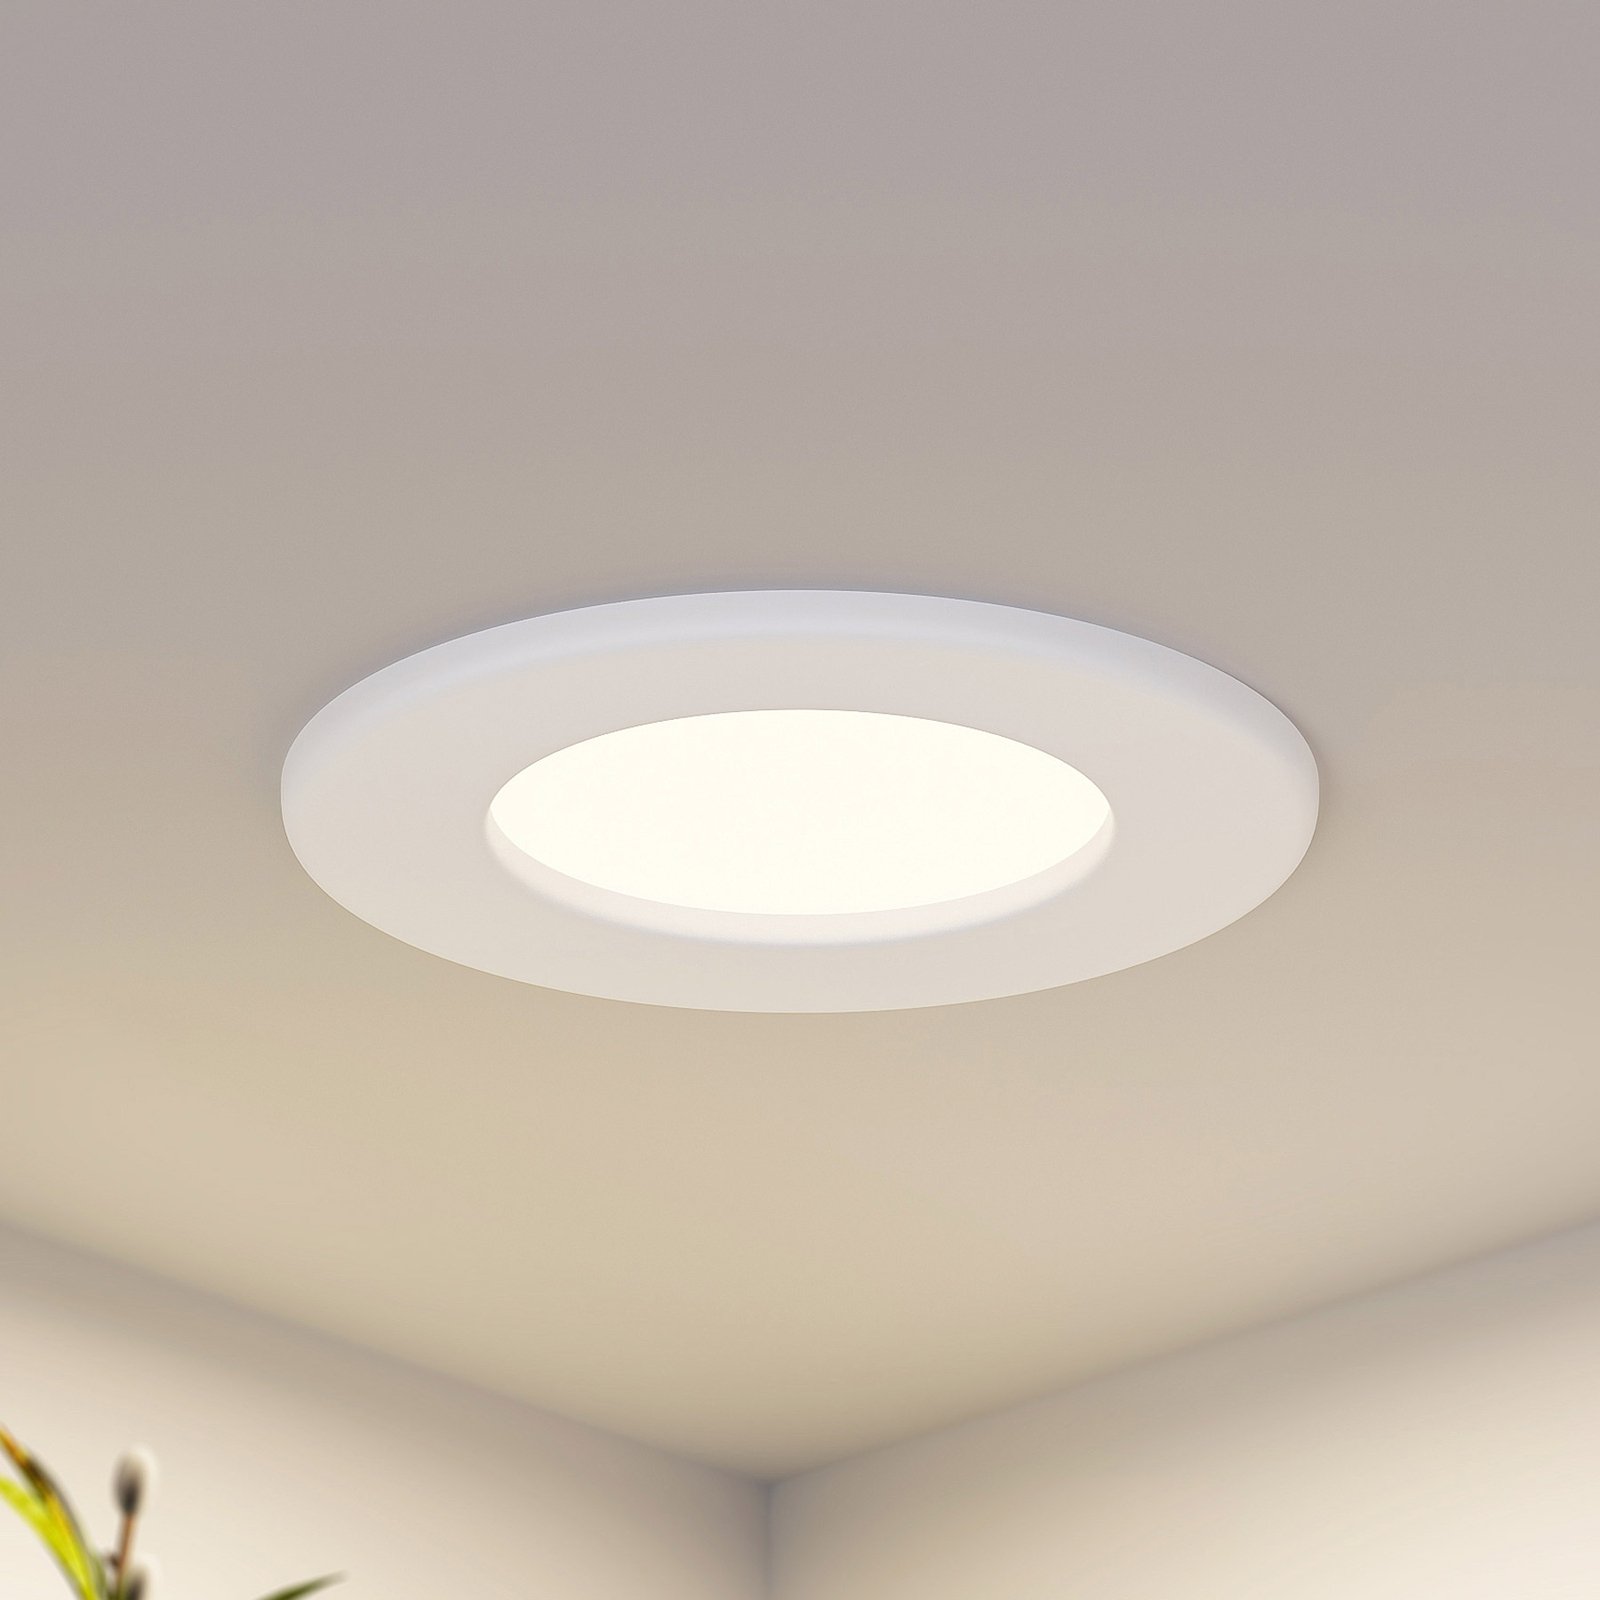 Prios Cadance LED recessed light, white, 11.5 cm